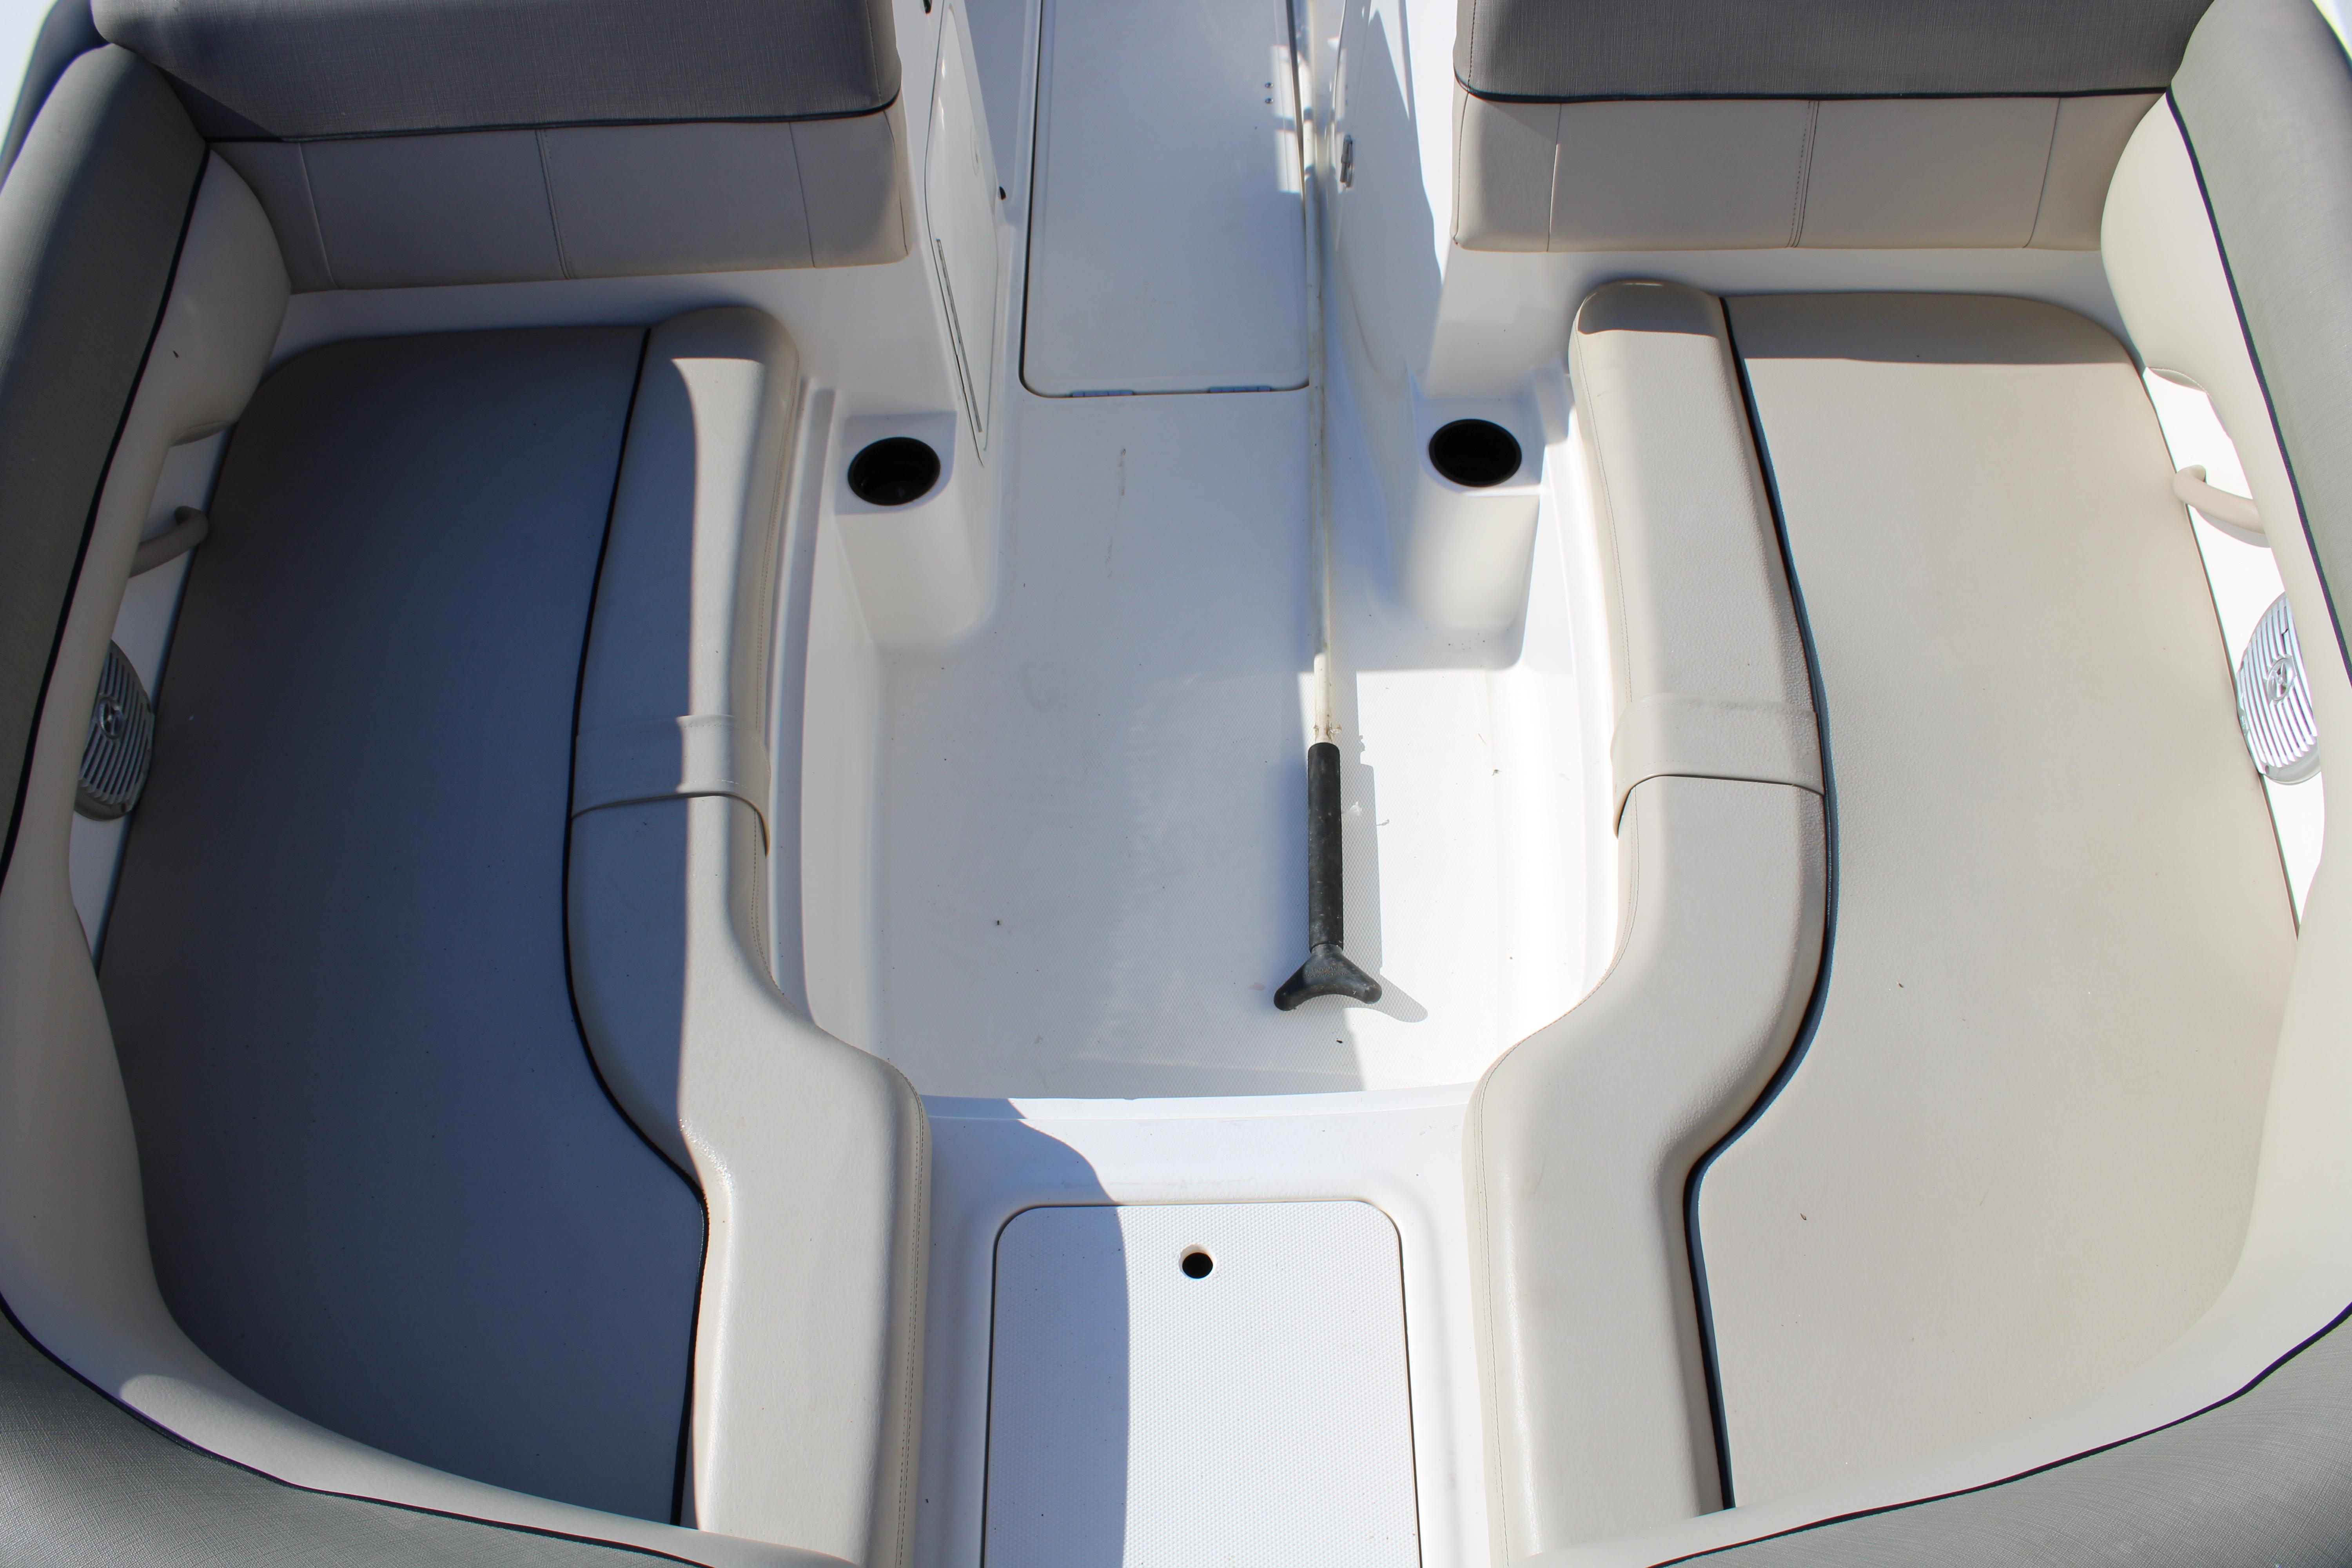 2016 Bayliner 210 Deck Boat